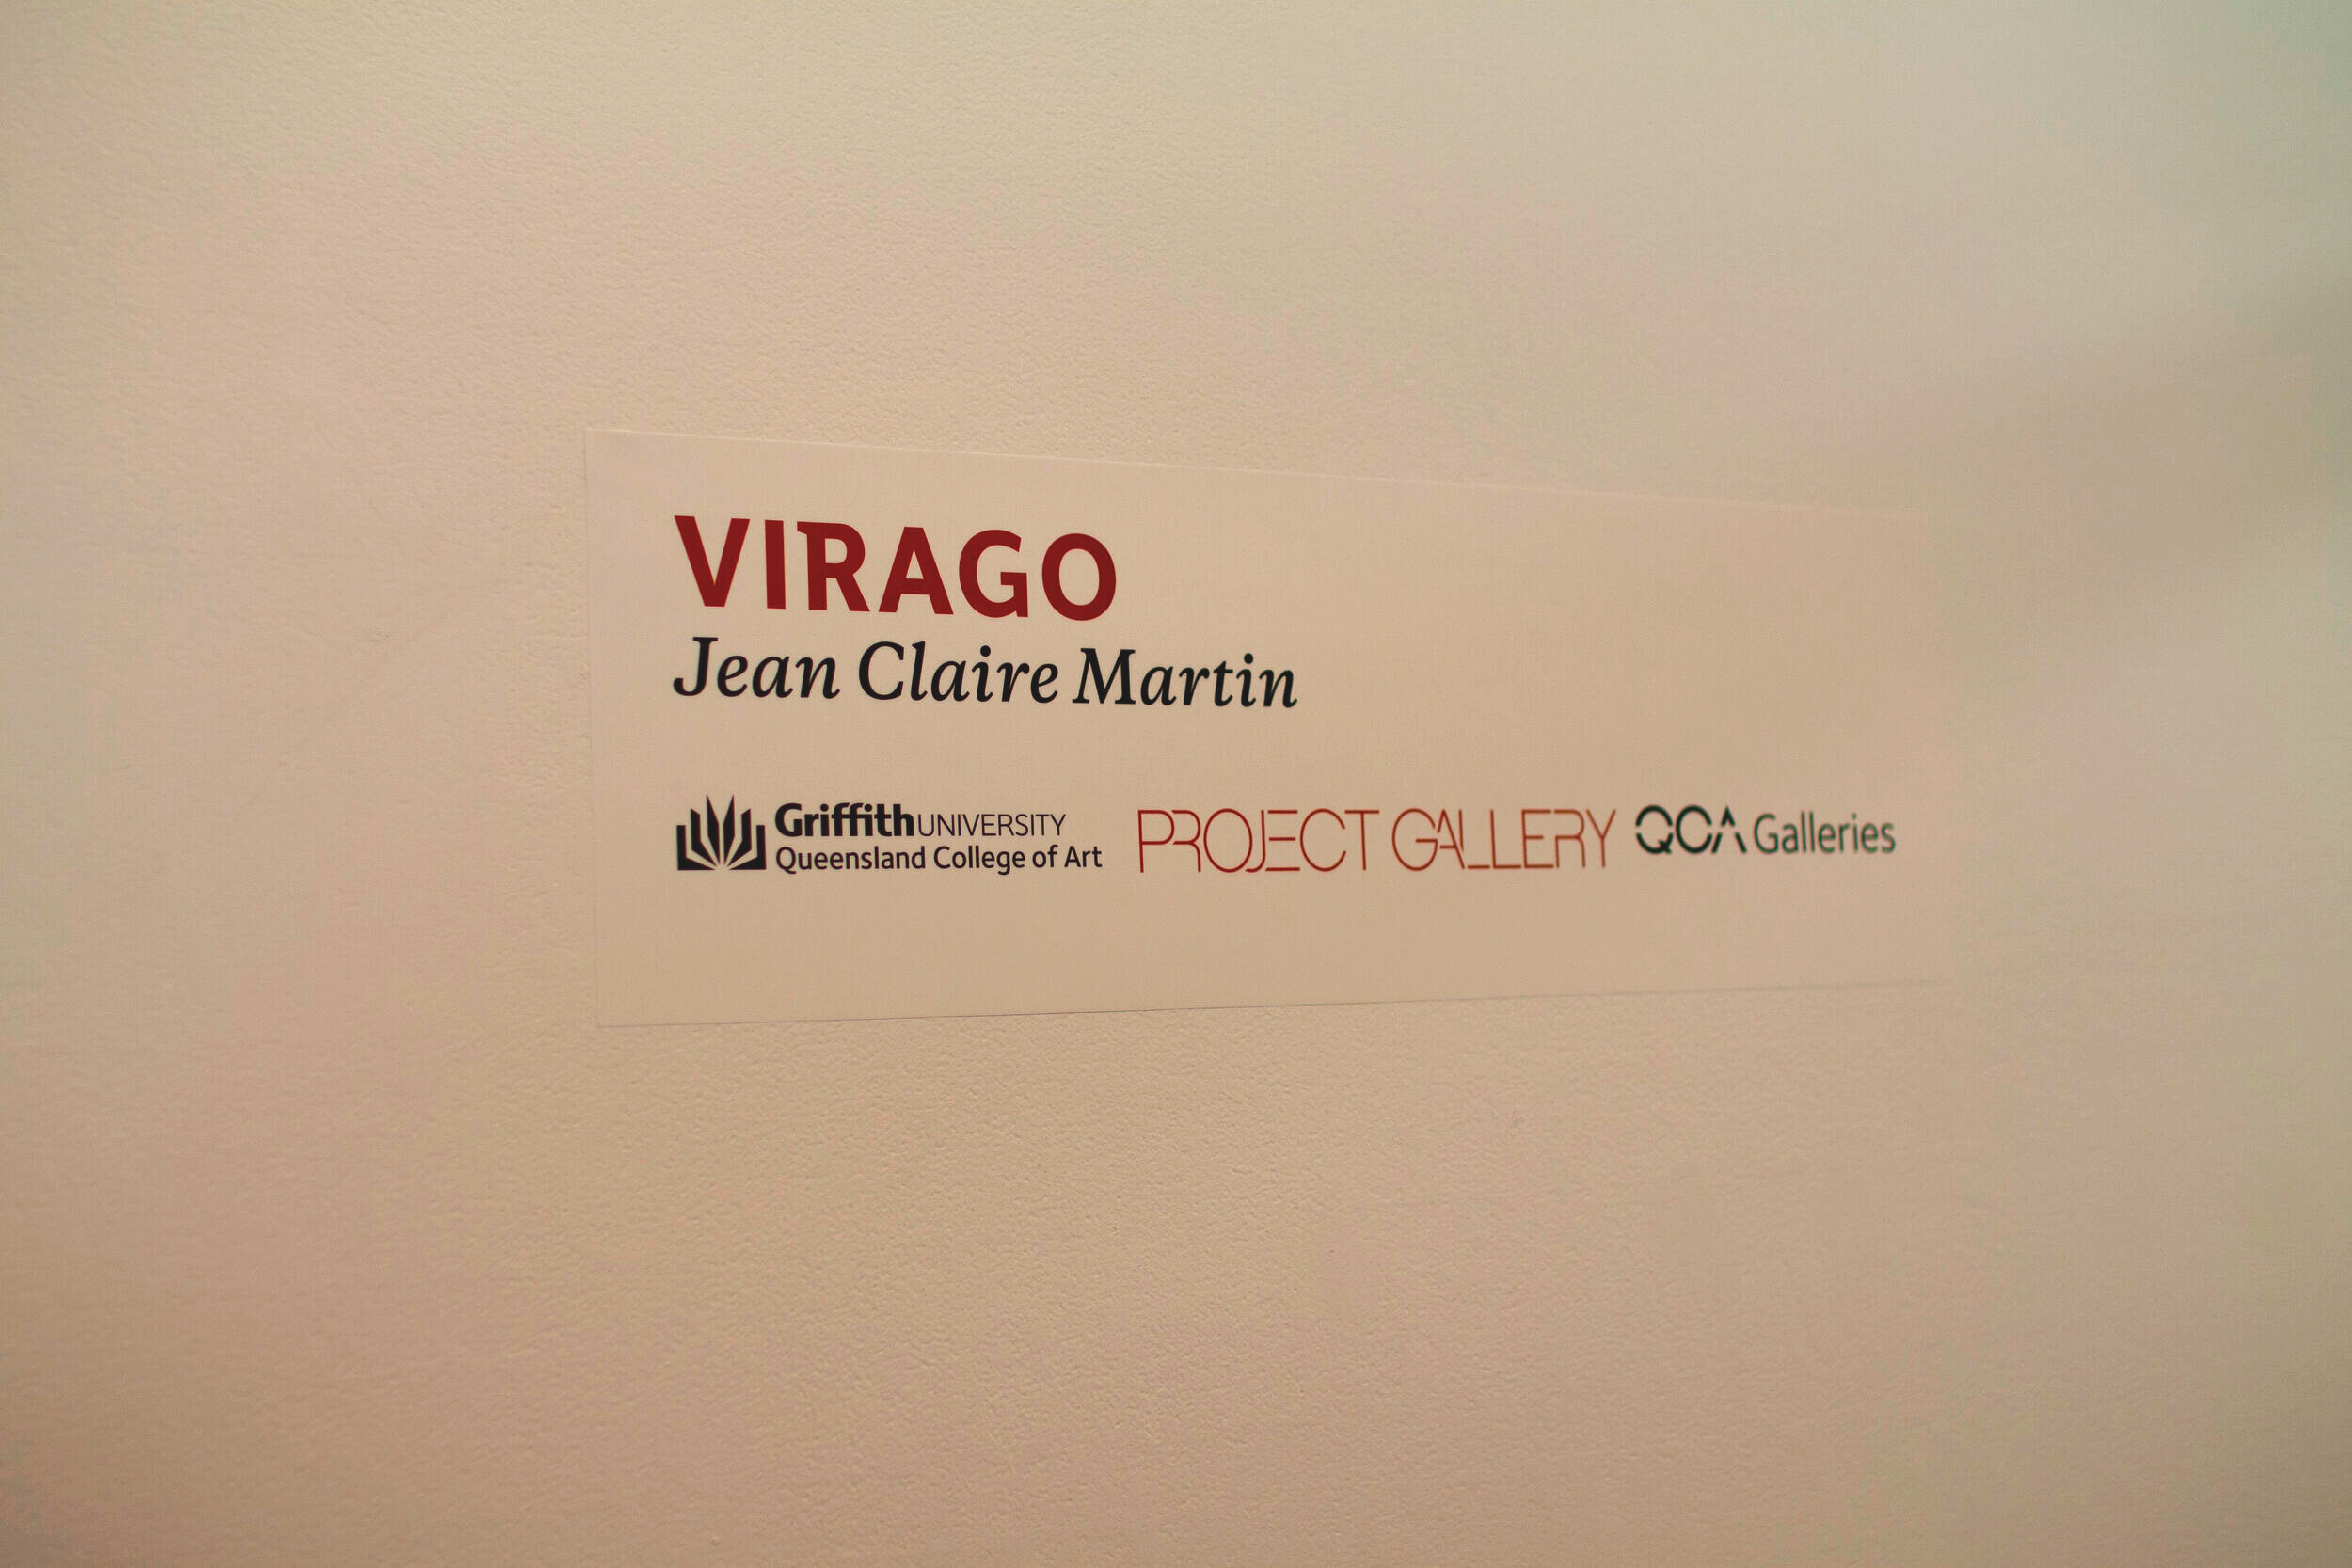 jean claire martin - Virago, Project Gallery @ QCA